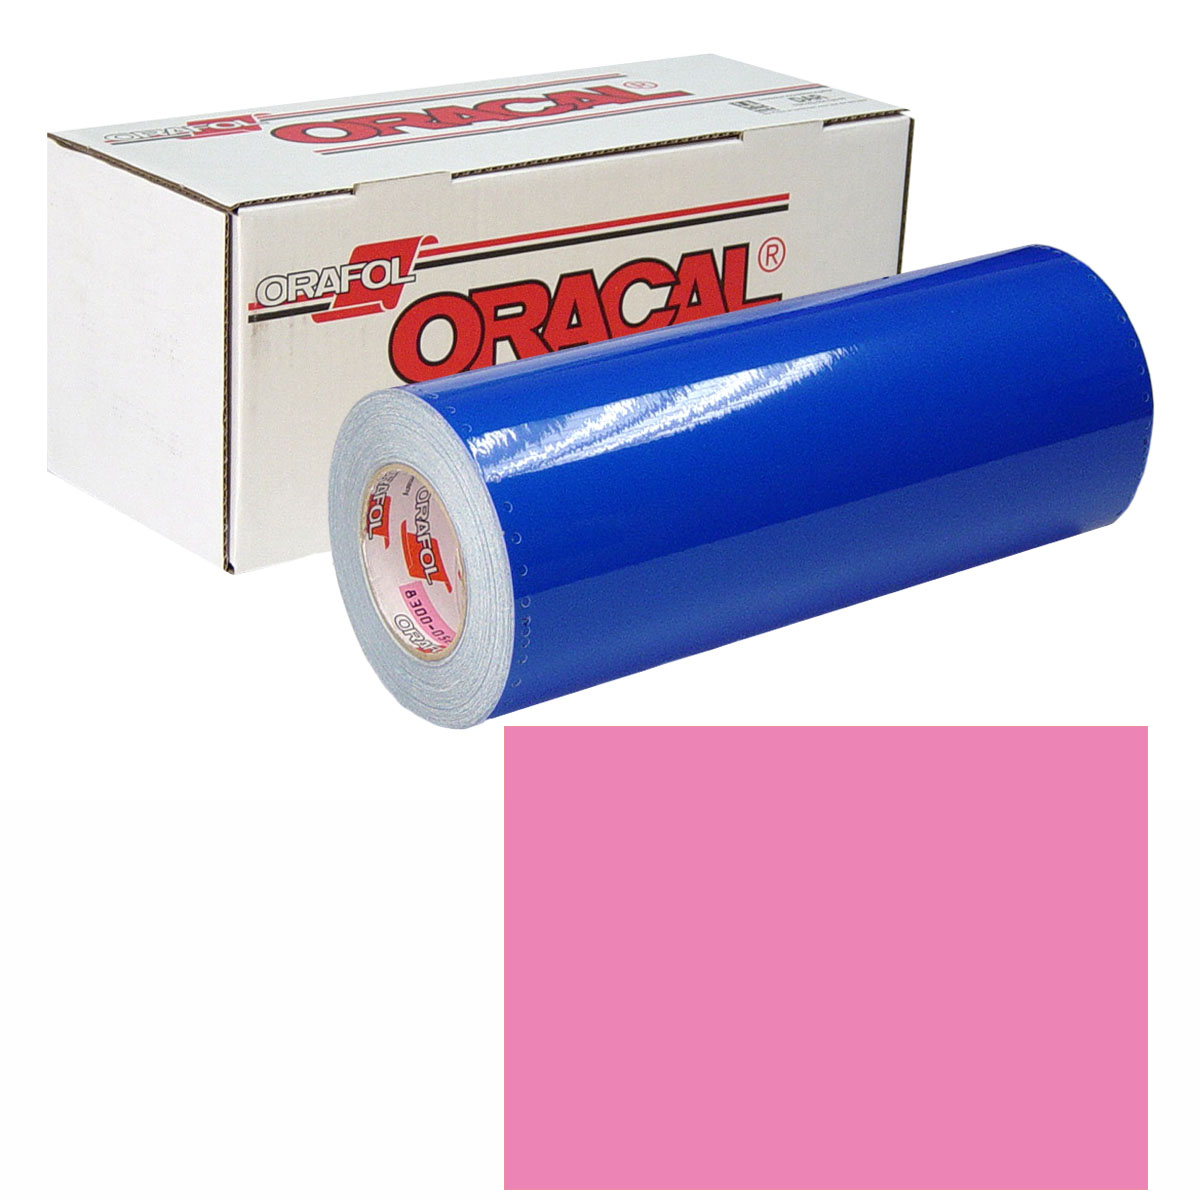 ORACAL 631 Unp 24in X 10yd 045 Soft Pink